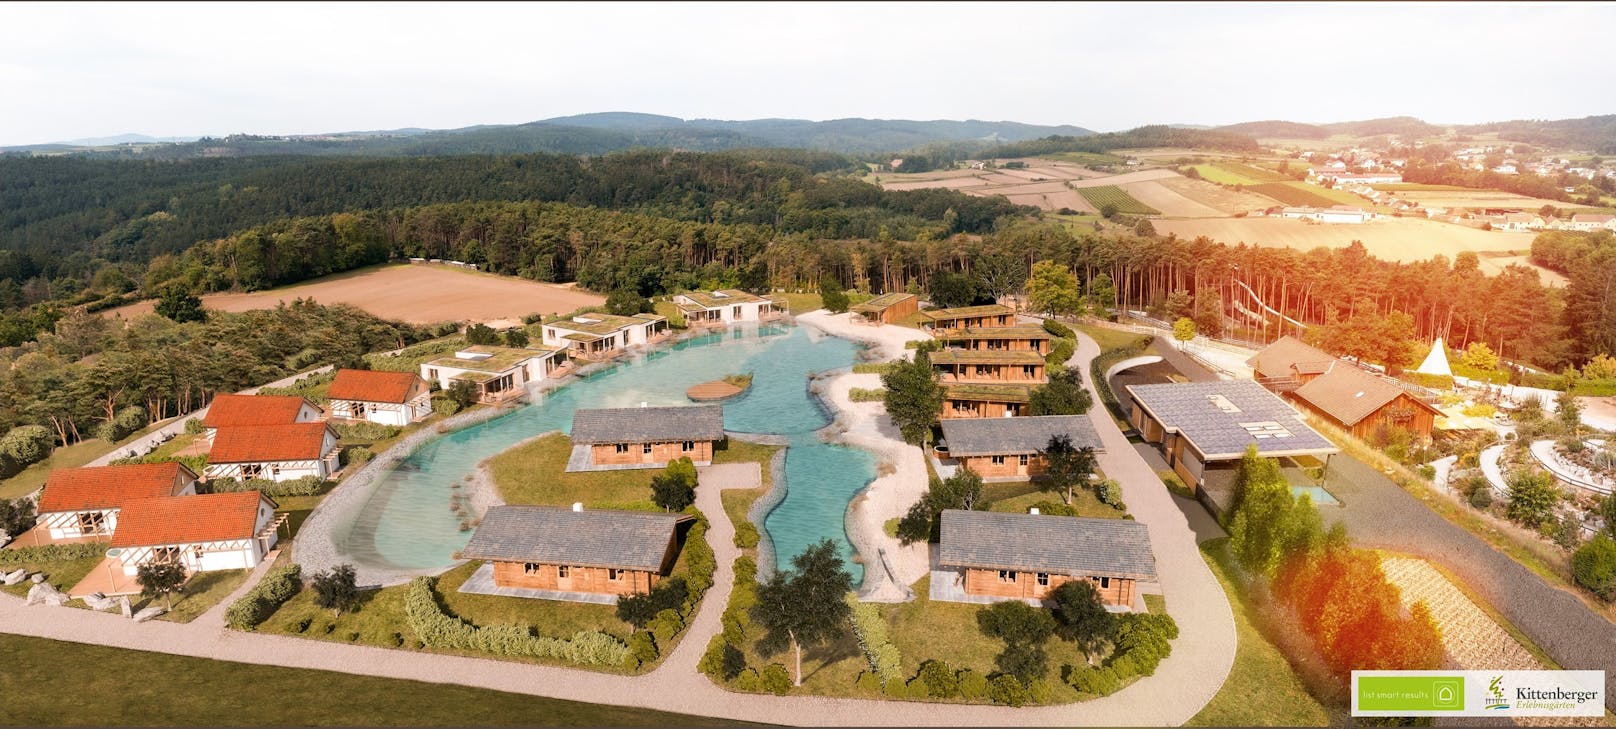 Sieben Millionen für Kittenberger's Chalet-Resort